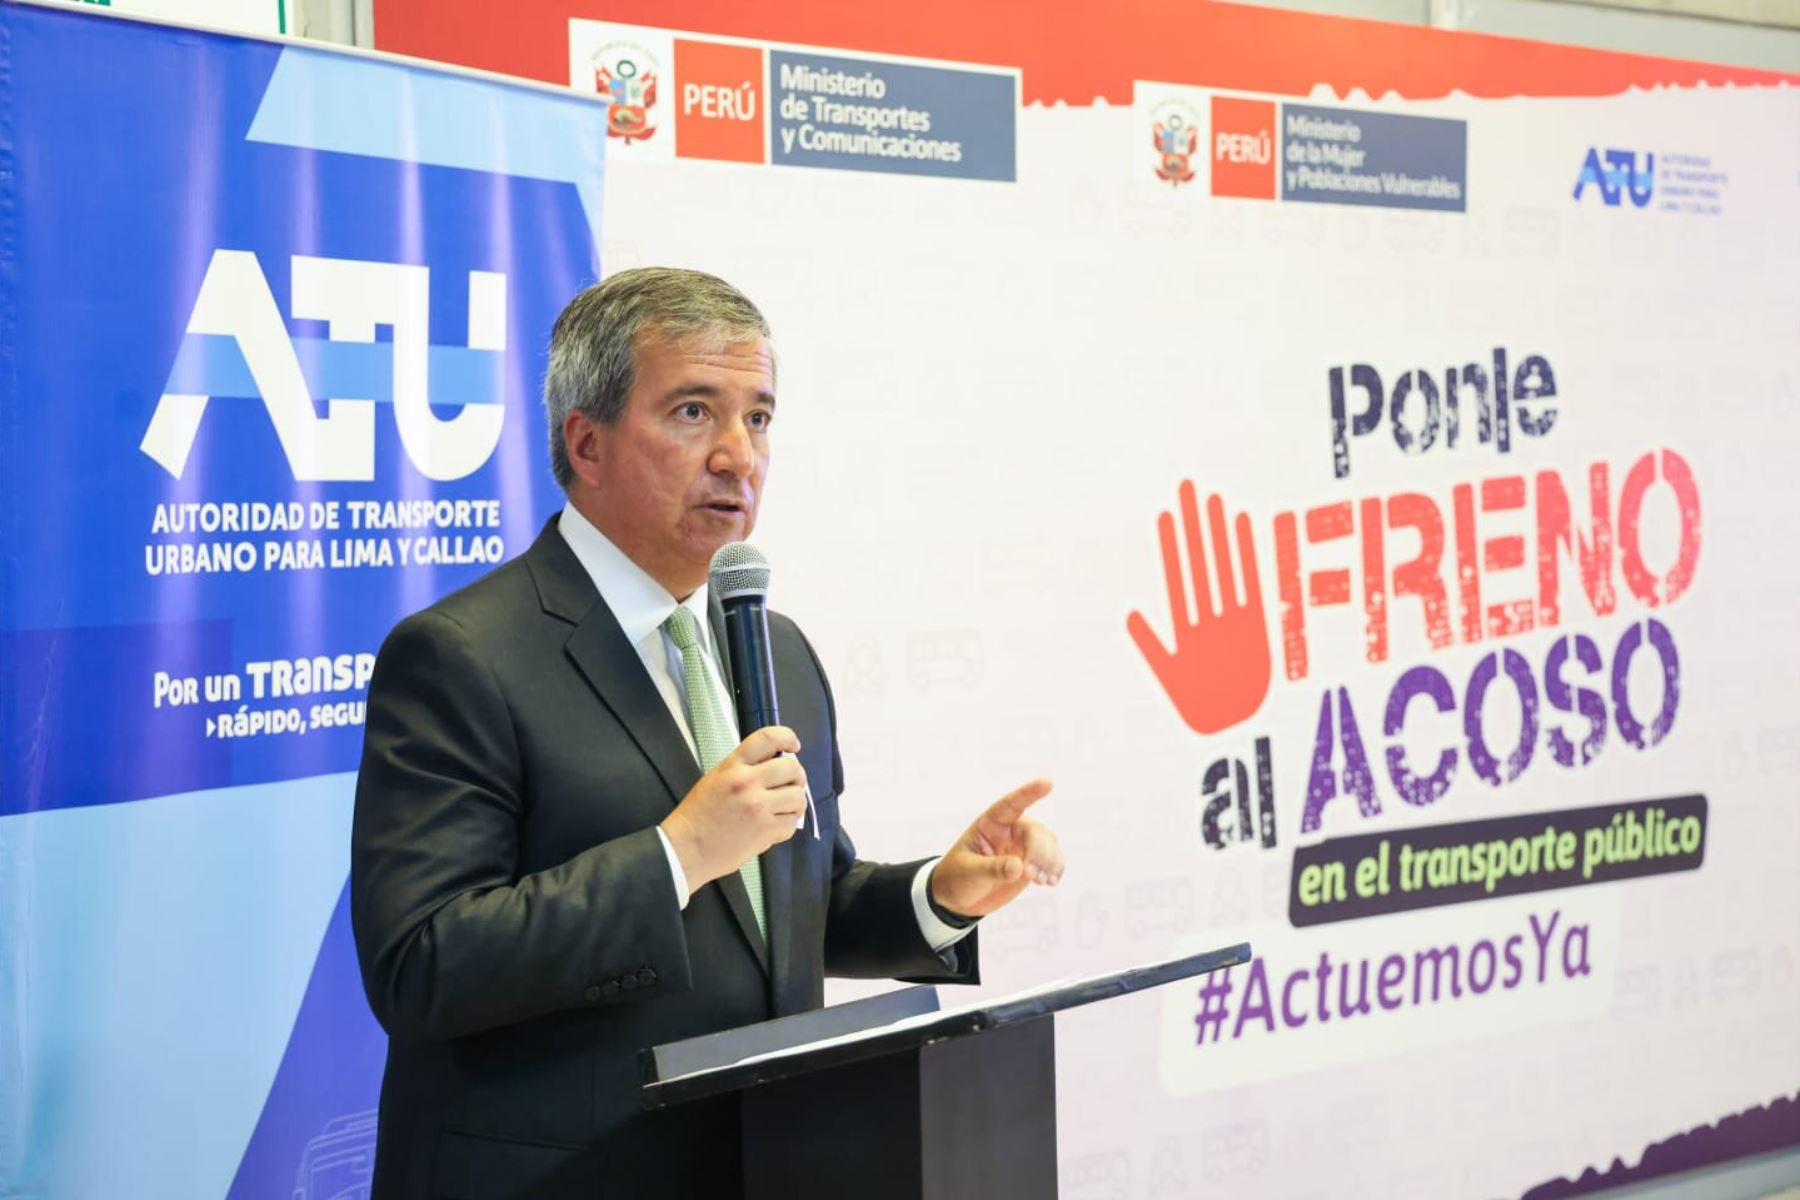 Ministro Pérez Reyes (MTC) participó en la presentación del módulo ¡Actuemos ya! Foto: ANDINA/Difusión